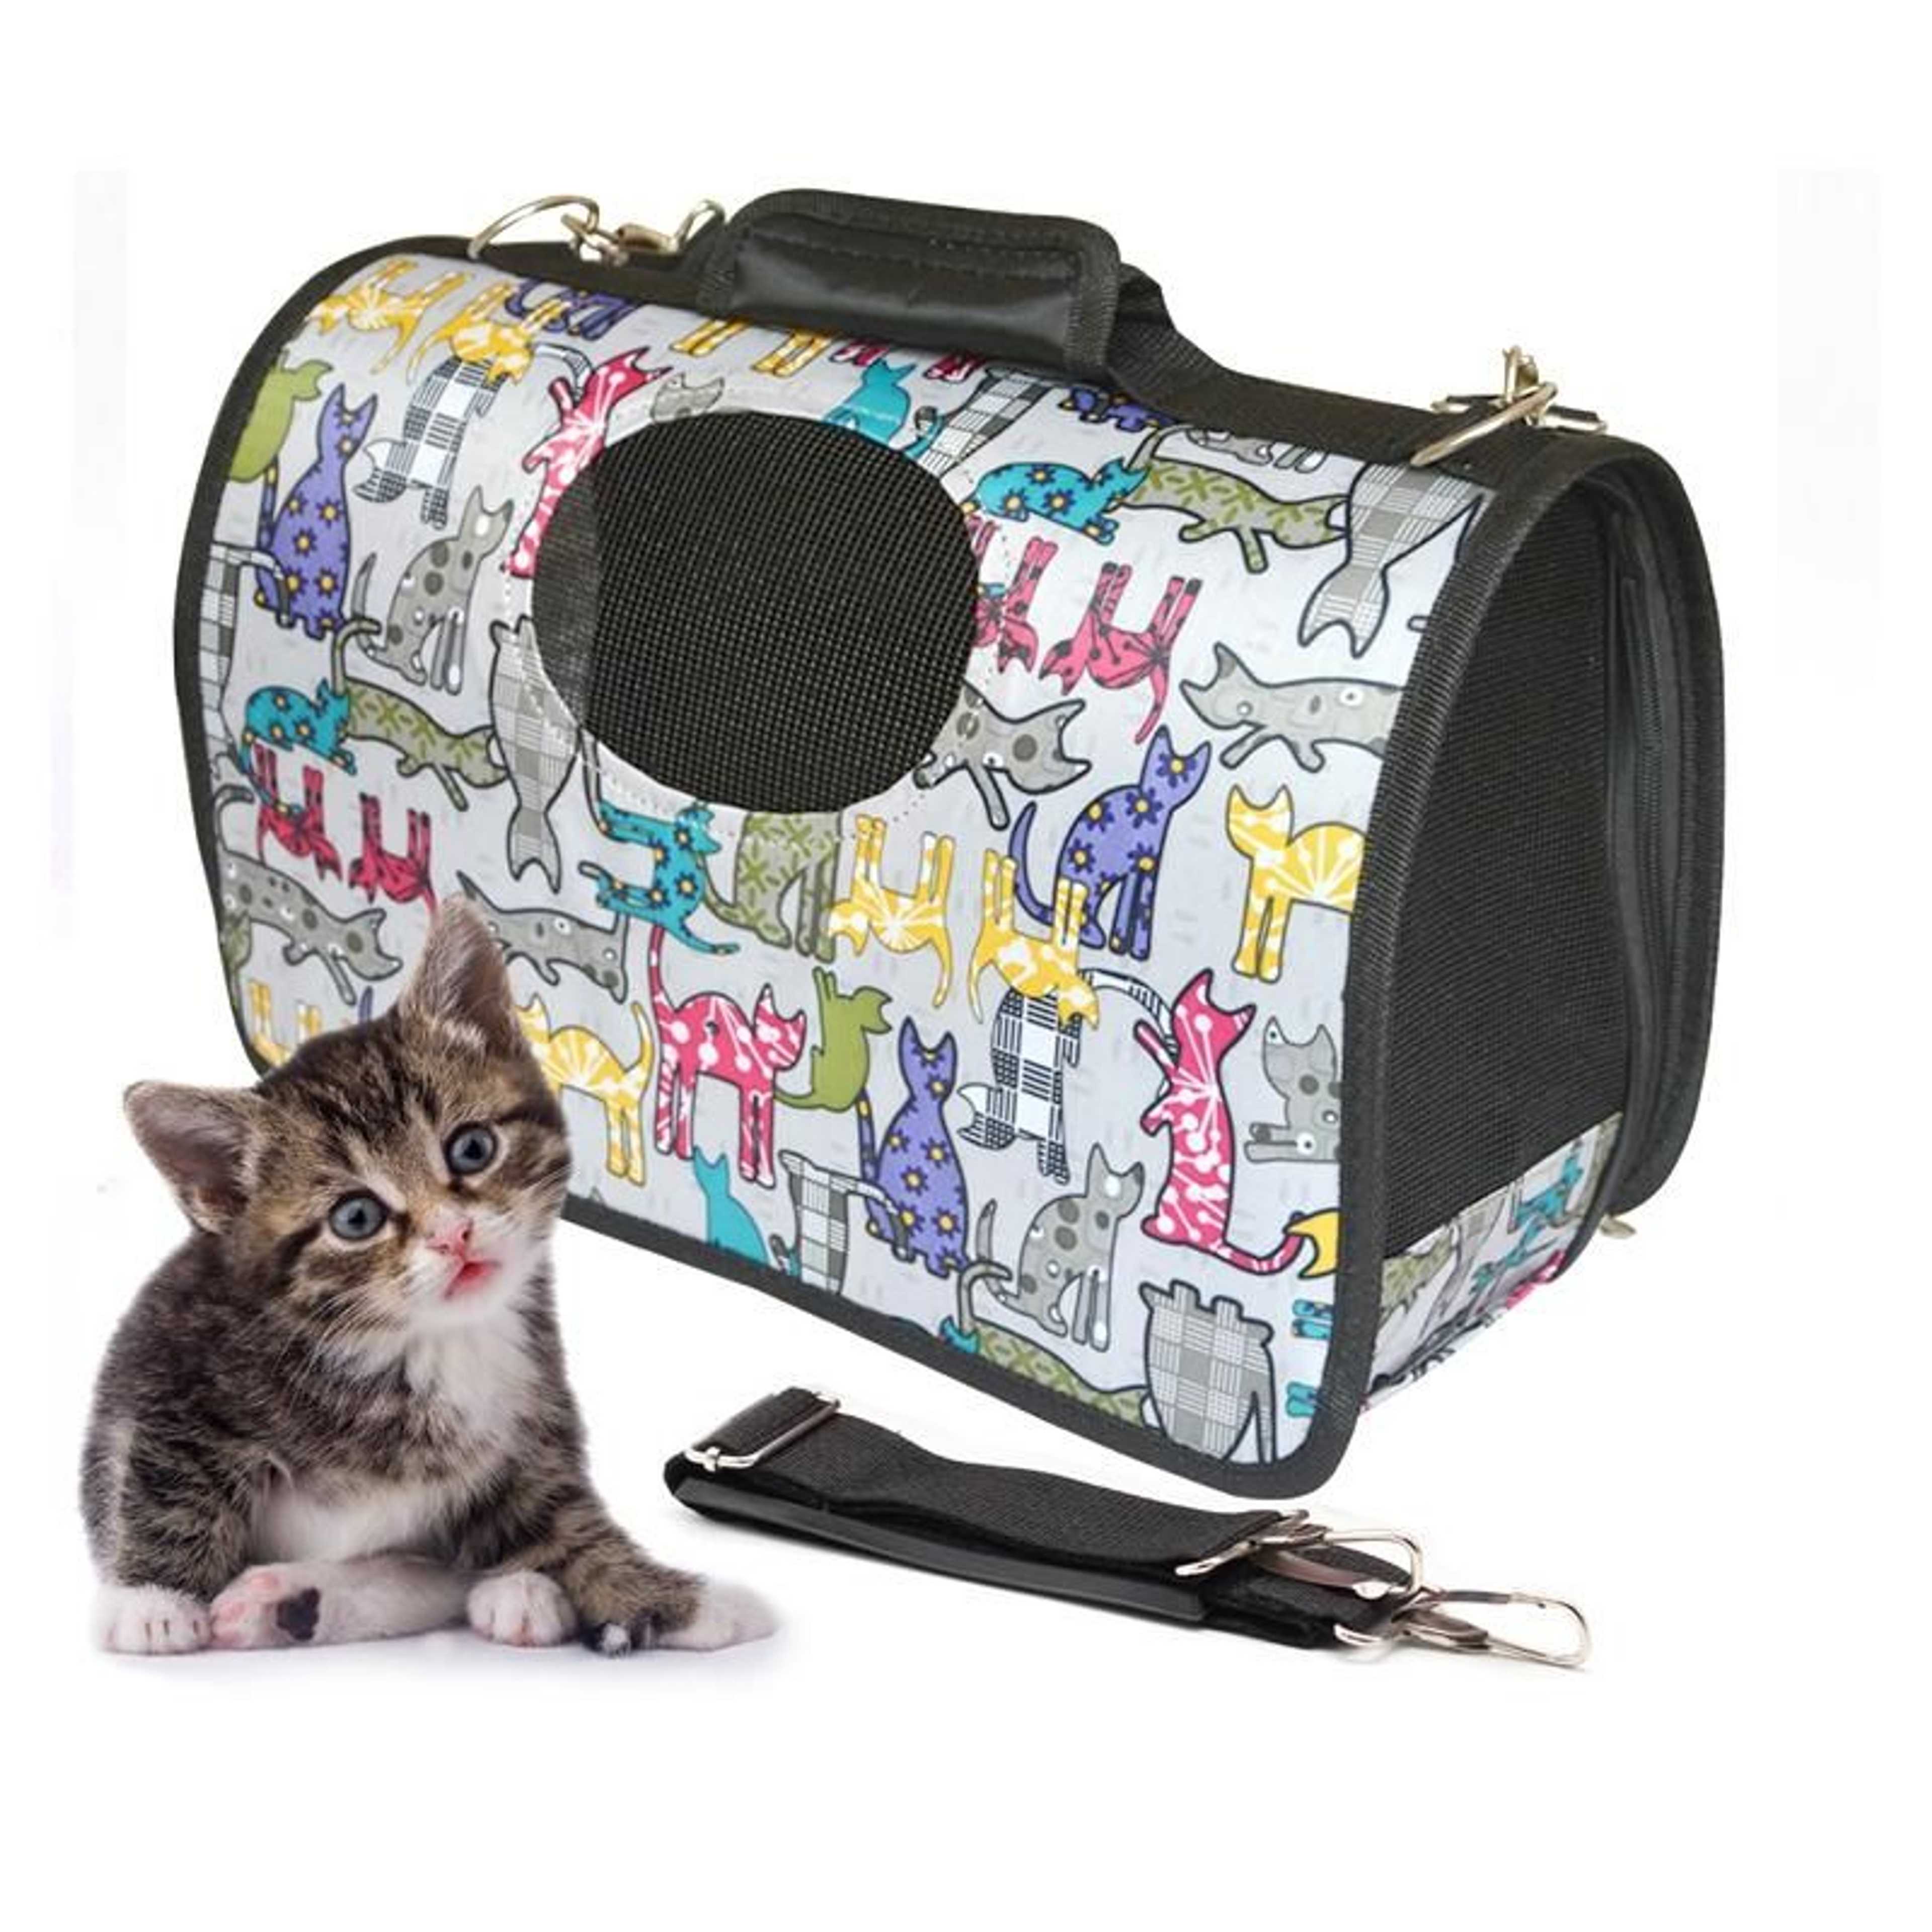 Portable Travel Soft Side Pet Carrier - Multicolour